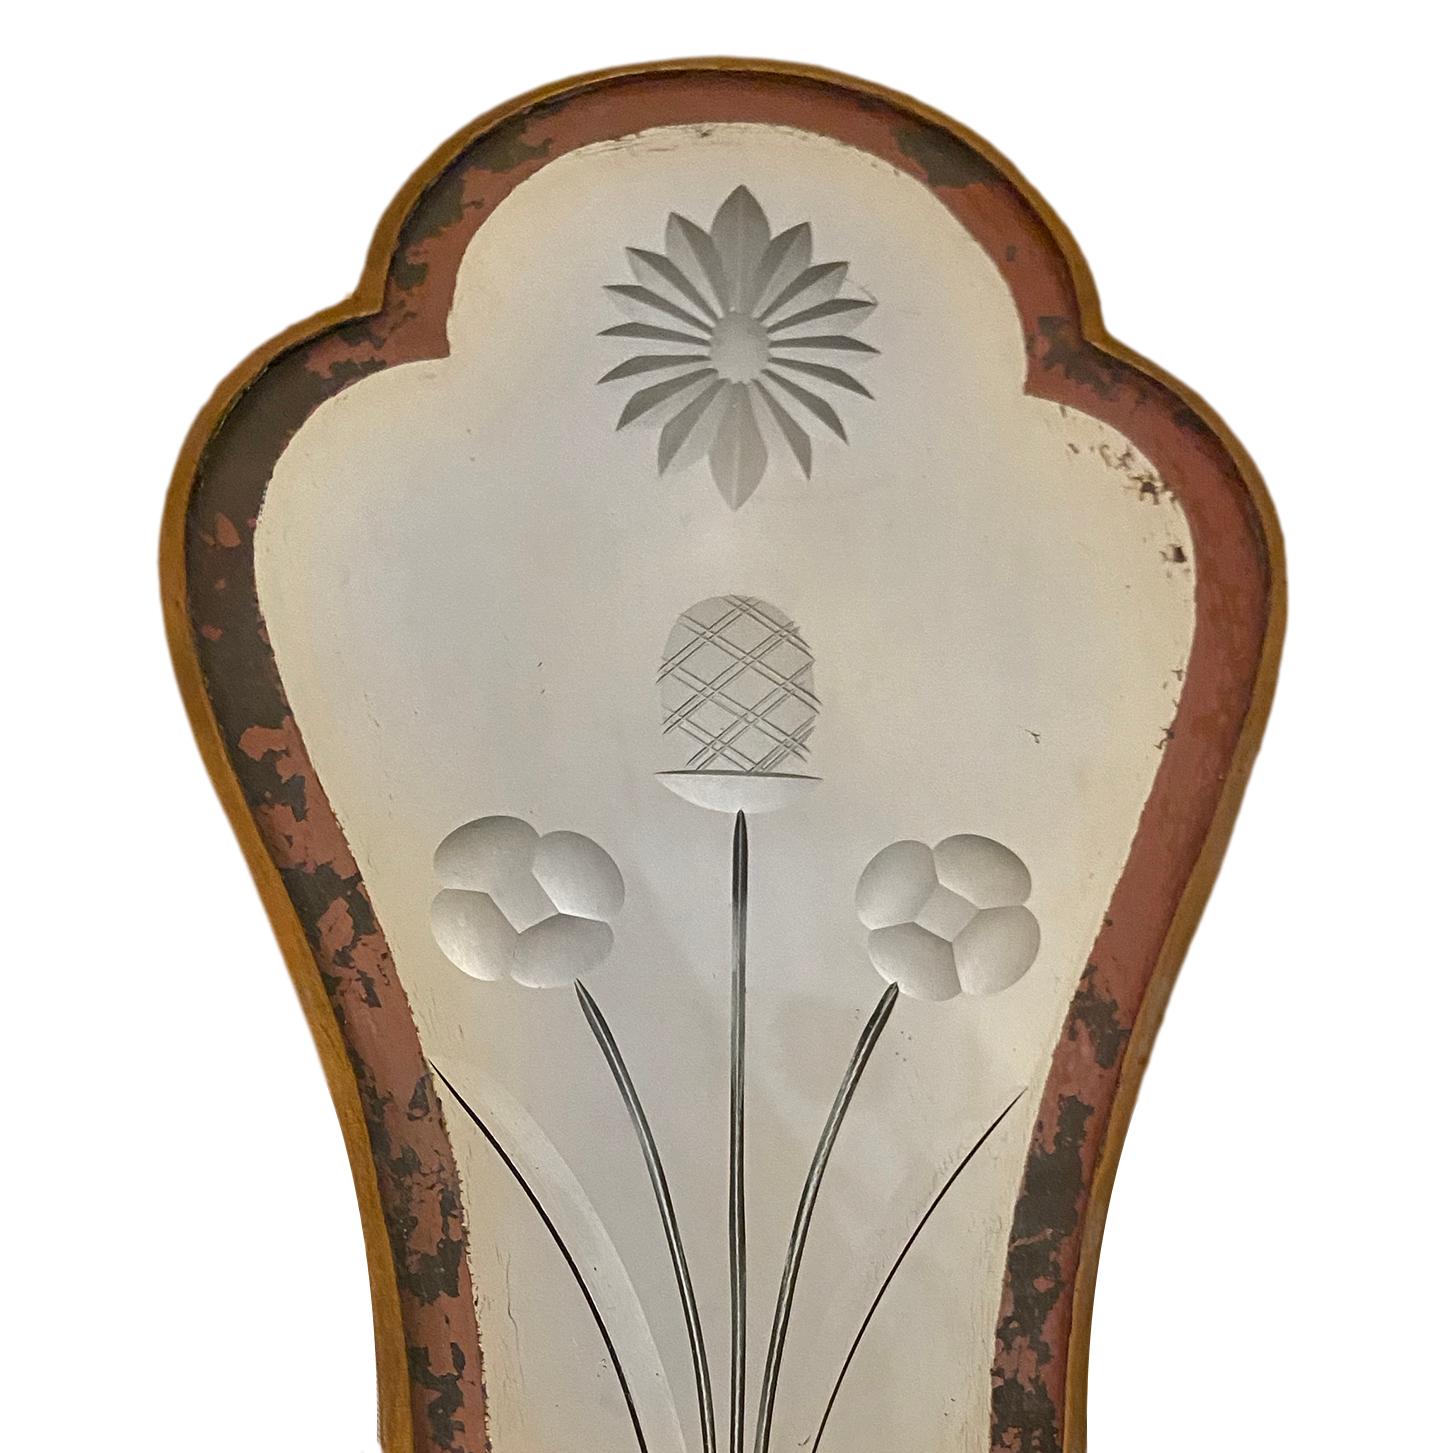 Paire d'appliques anglaises à double lumière en bronze patiné, datant des années 1920, avec plaques arrière en miroir gravé.

Mesures :
Hauteur 14.5